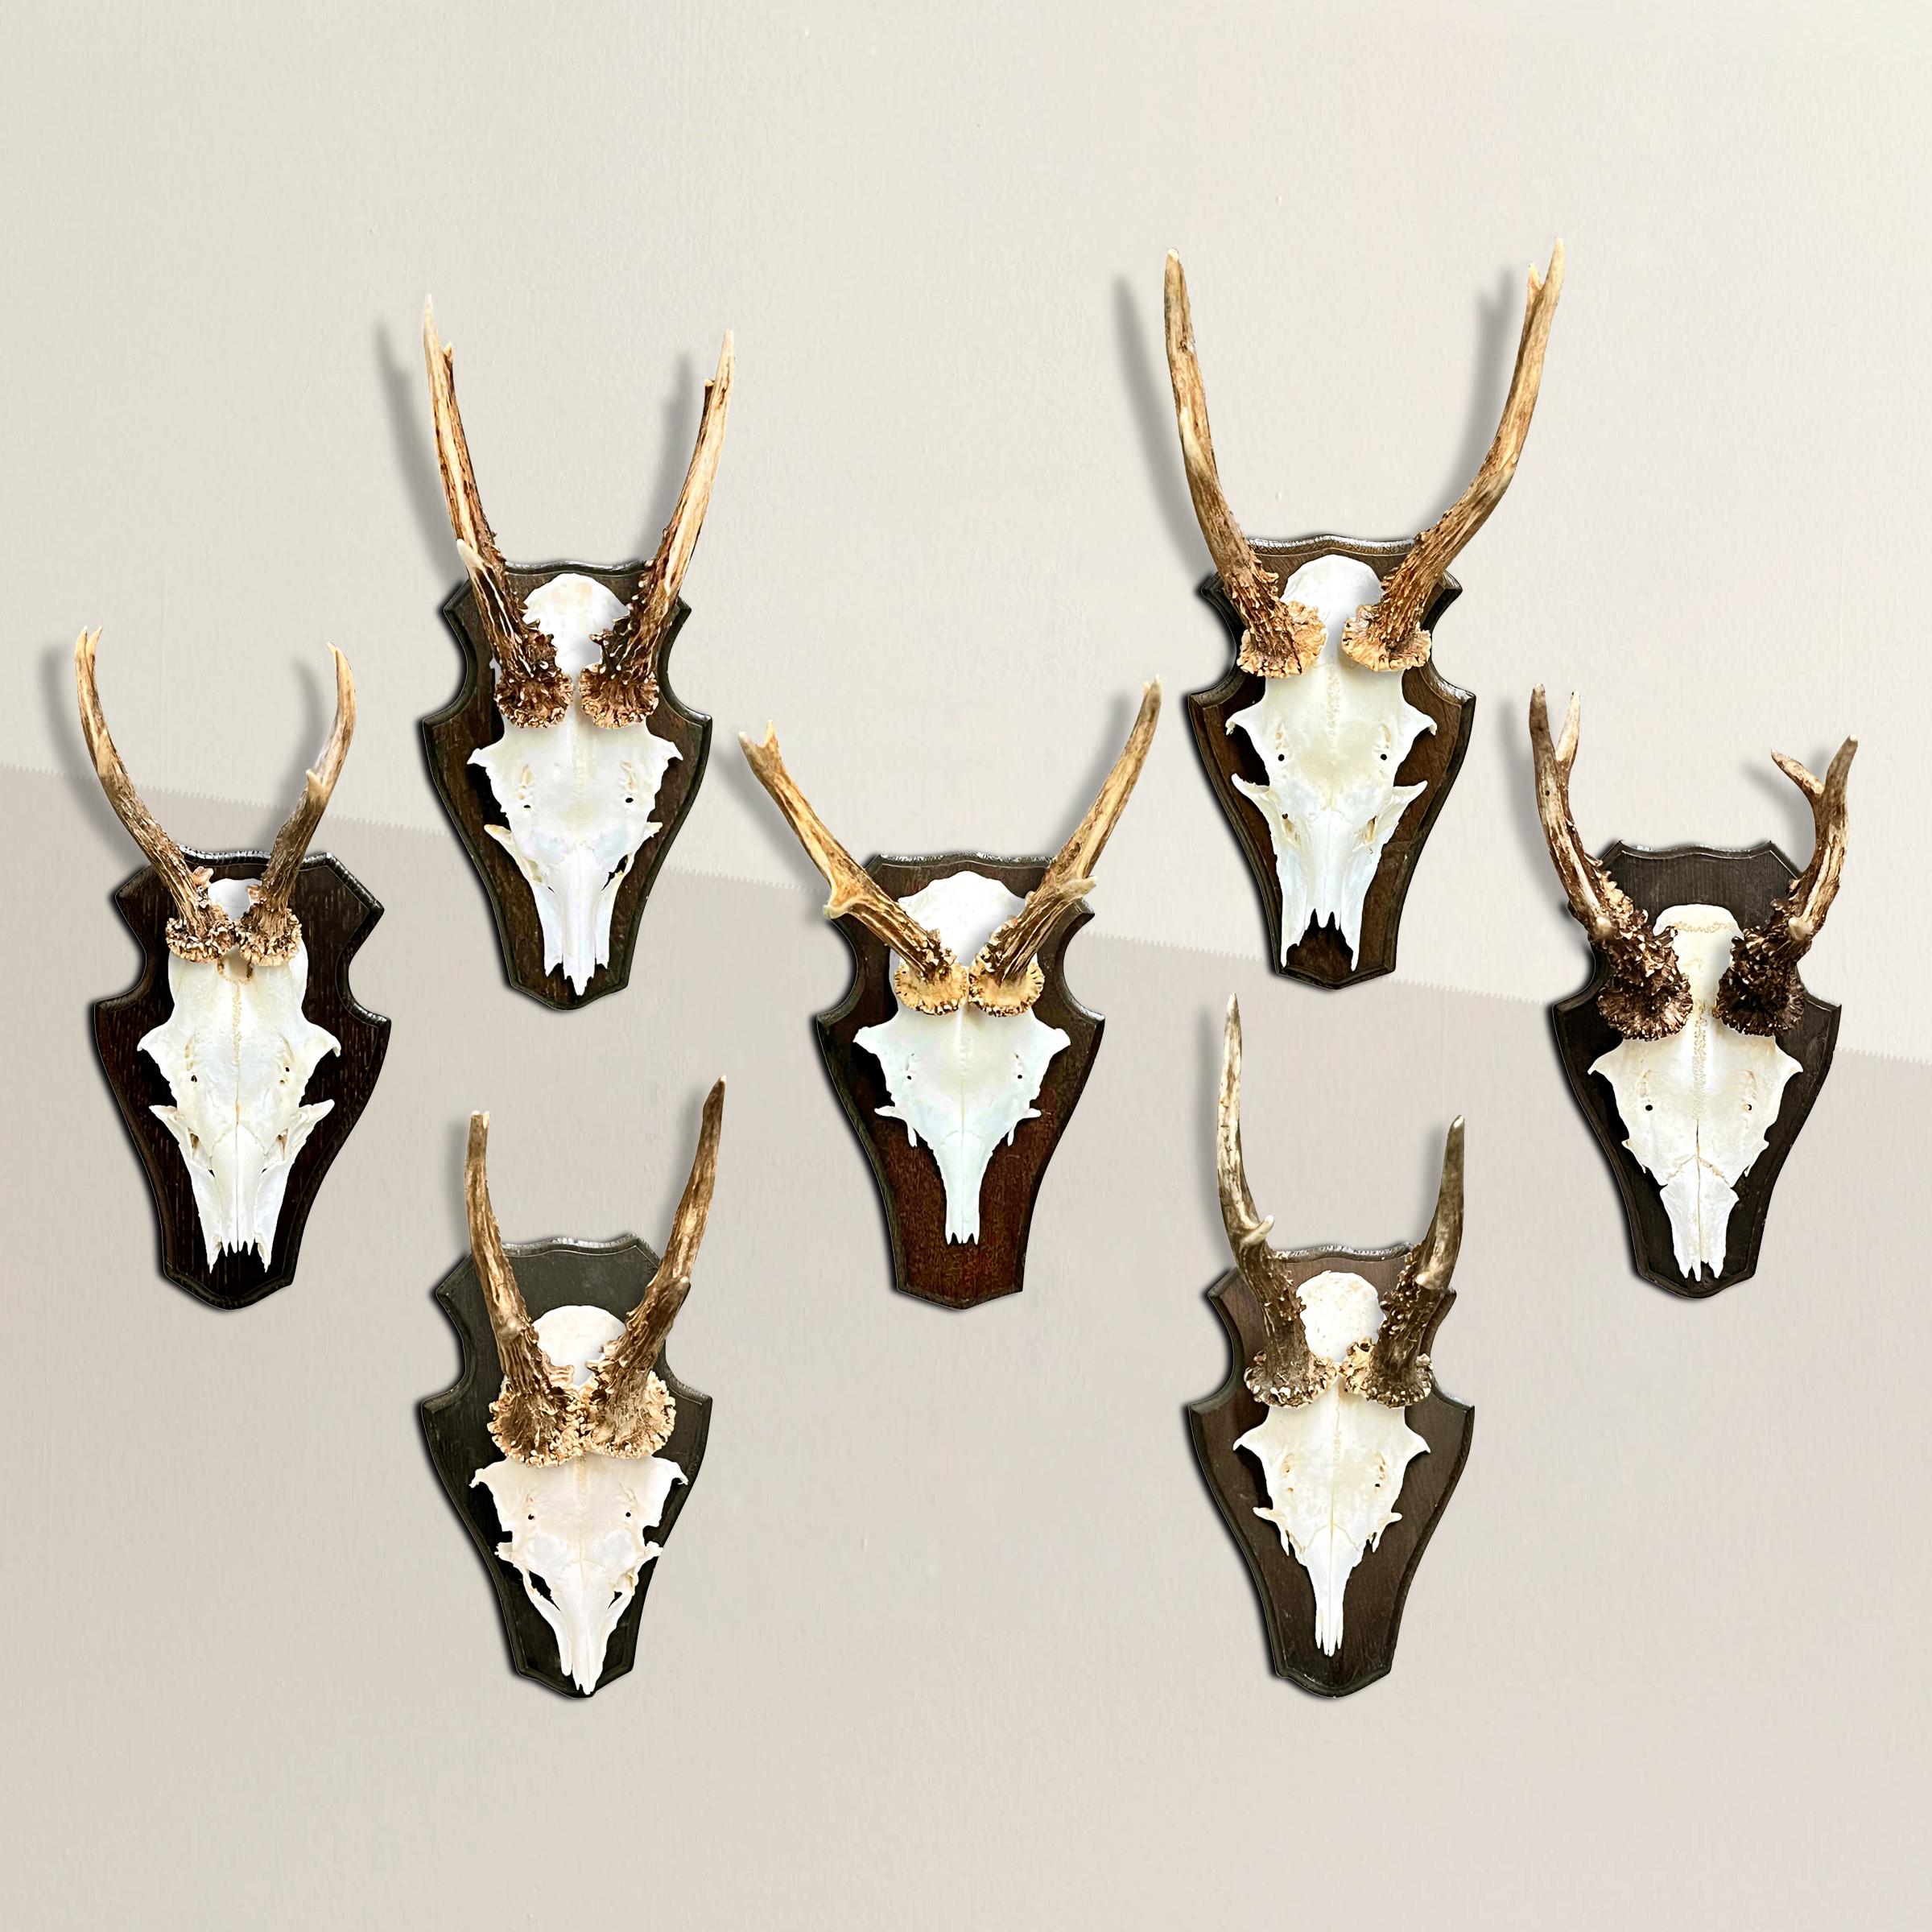 Plongez dans l'histoire royale de la chasse avec cette extraordinaire collection de sept trophées de chevreuil provenant d'un vénérable pavillon de chasse de la Forêt-Noire, en Allemagne. Chaque monture témoigne d'une époque révolue où le privilège